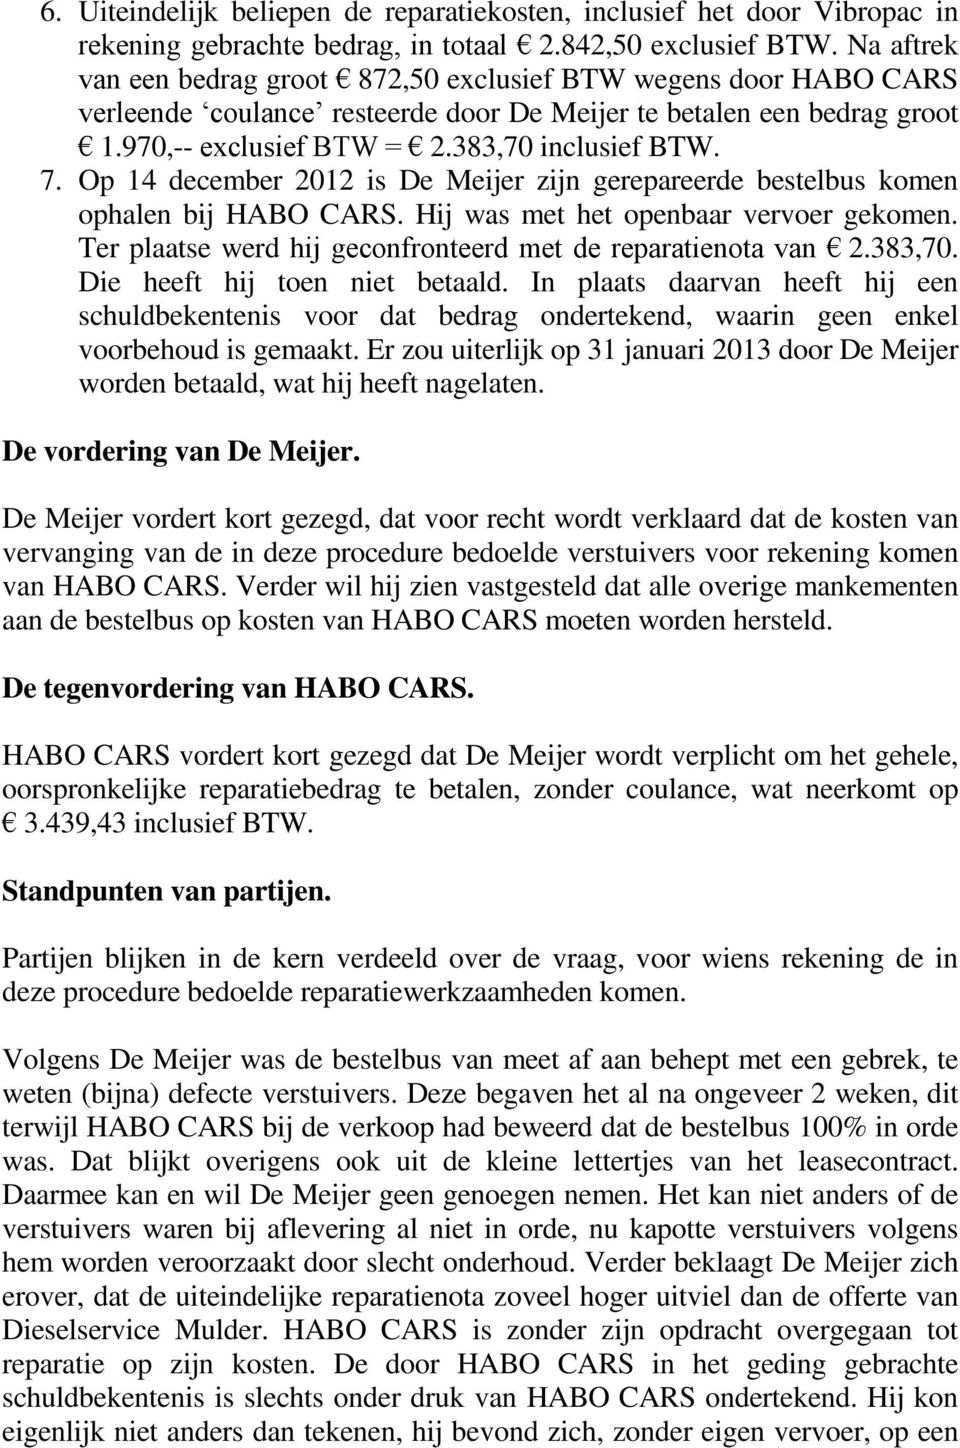 Op 14 december 2012 is De Meijer zijn gerepareerde bestelbus komen ophalen bij HABO CARS. Hij was met het openbaar vervoer gekomen. Ter plaatse werd hij geconfronteerd met de reparatienota van 2.